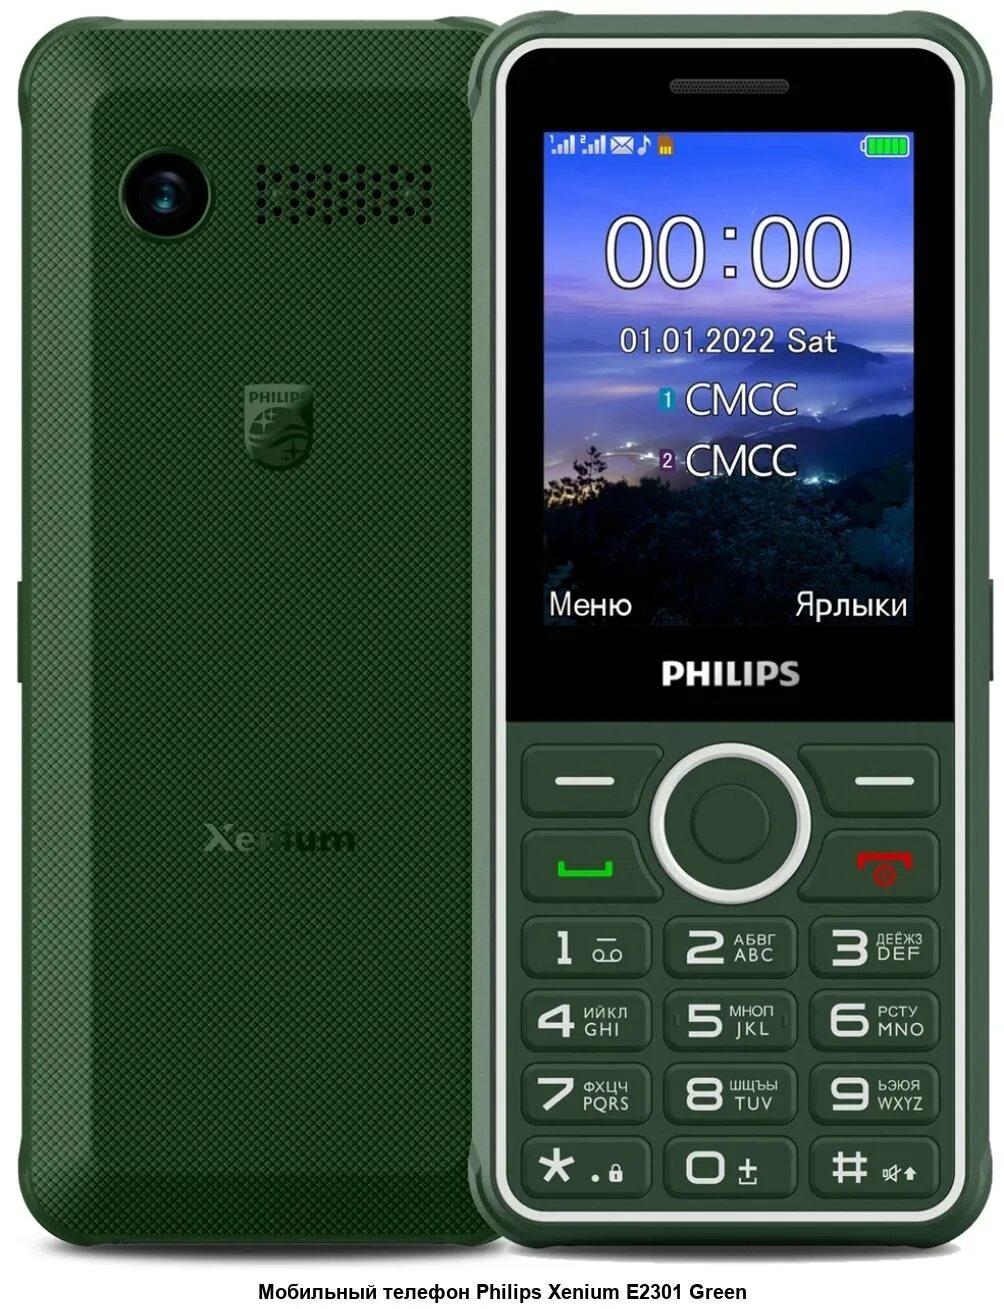 Филипс 2301. Philips Xenium e2301. Philips Xenium 2301. Филлипс е 2301. E2301 Philips Green.